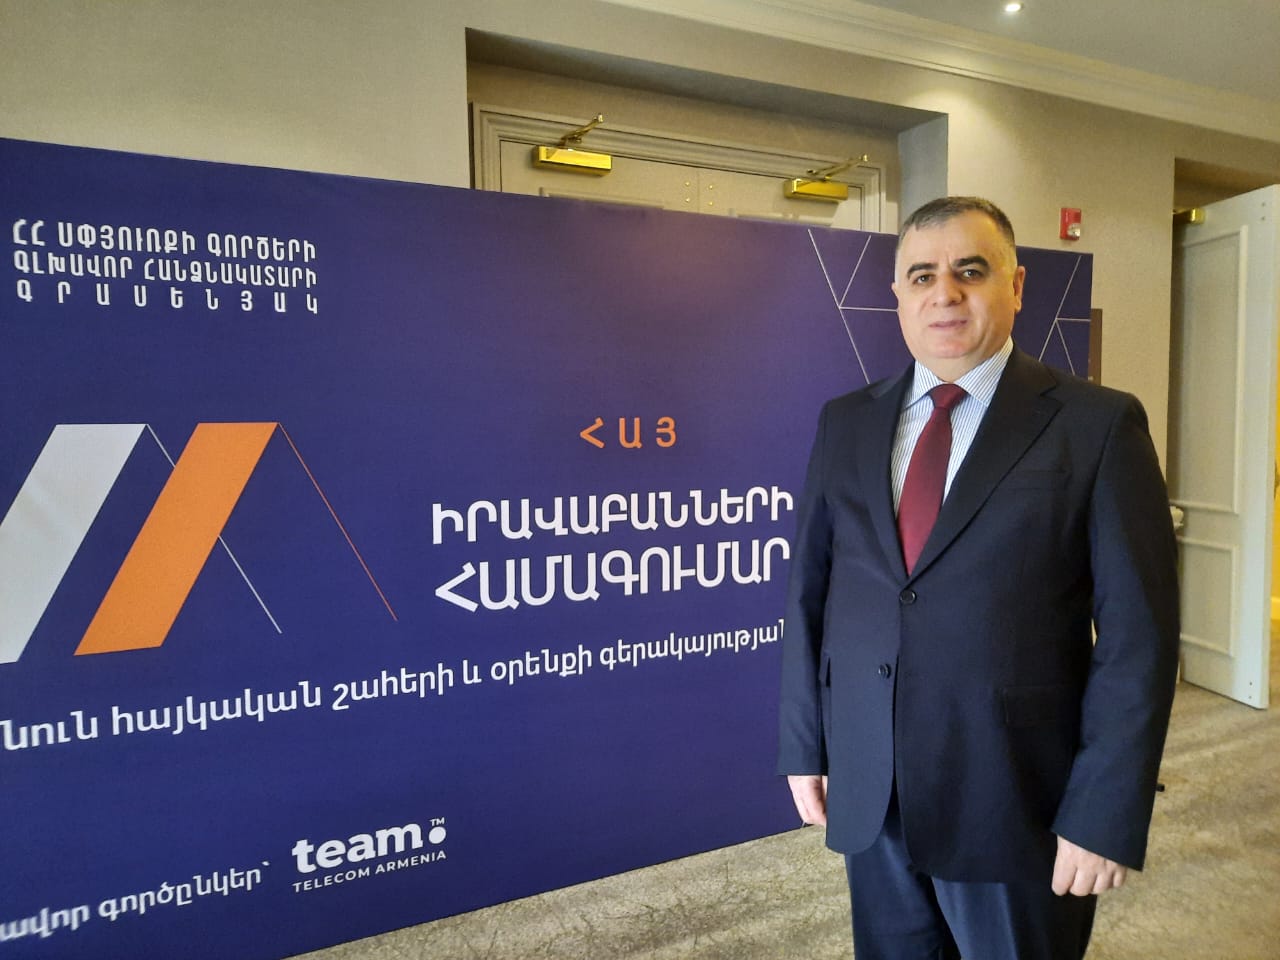 Юрий Навоян: Армении пора иметь свою концепцию по отношению к диаспоре, таковой может стать теория «особой силы» 